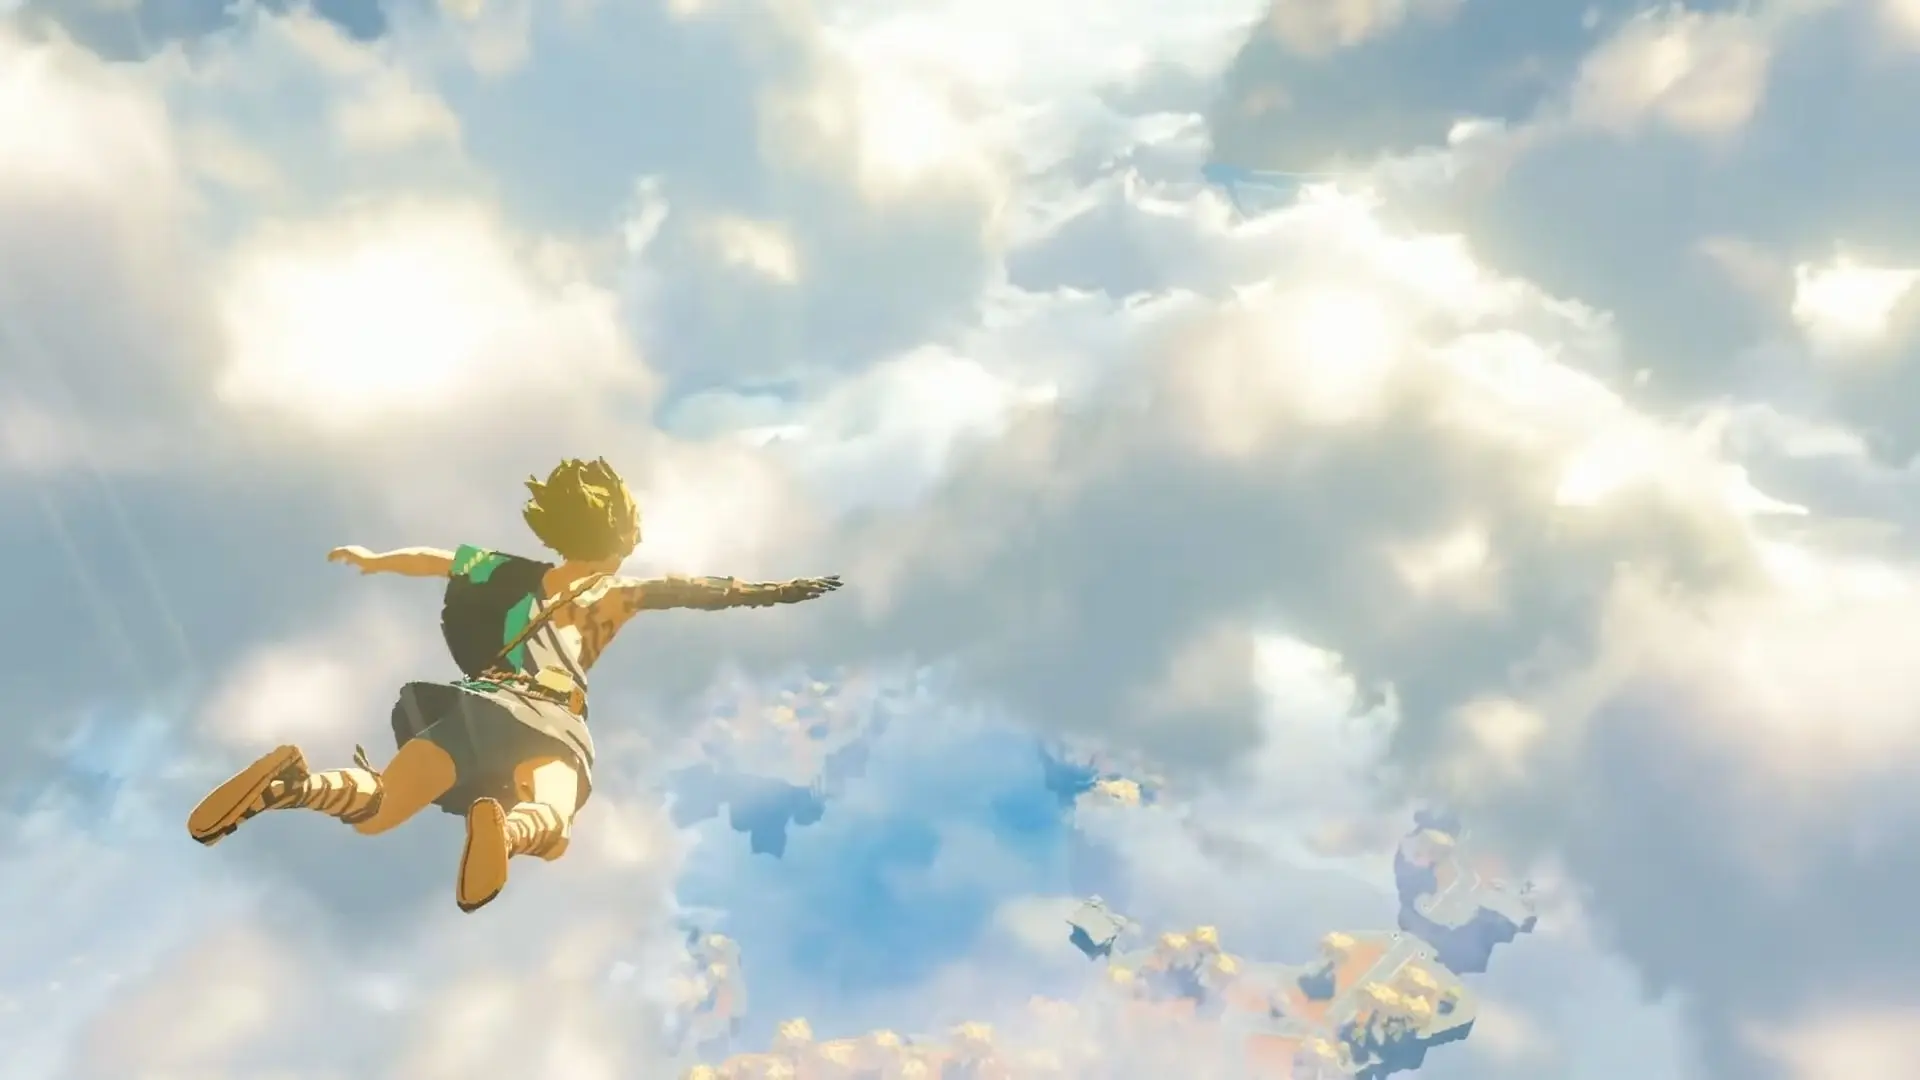 Il sequel di Zelda: Breath of the Wild è stato rinviato al 2023